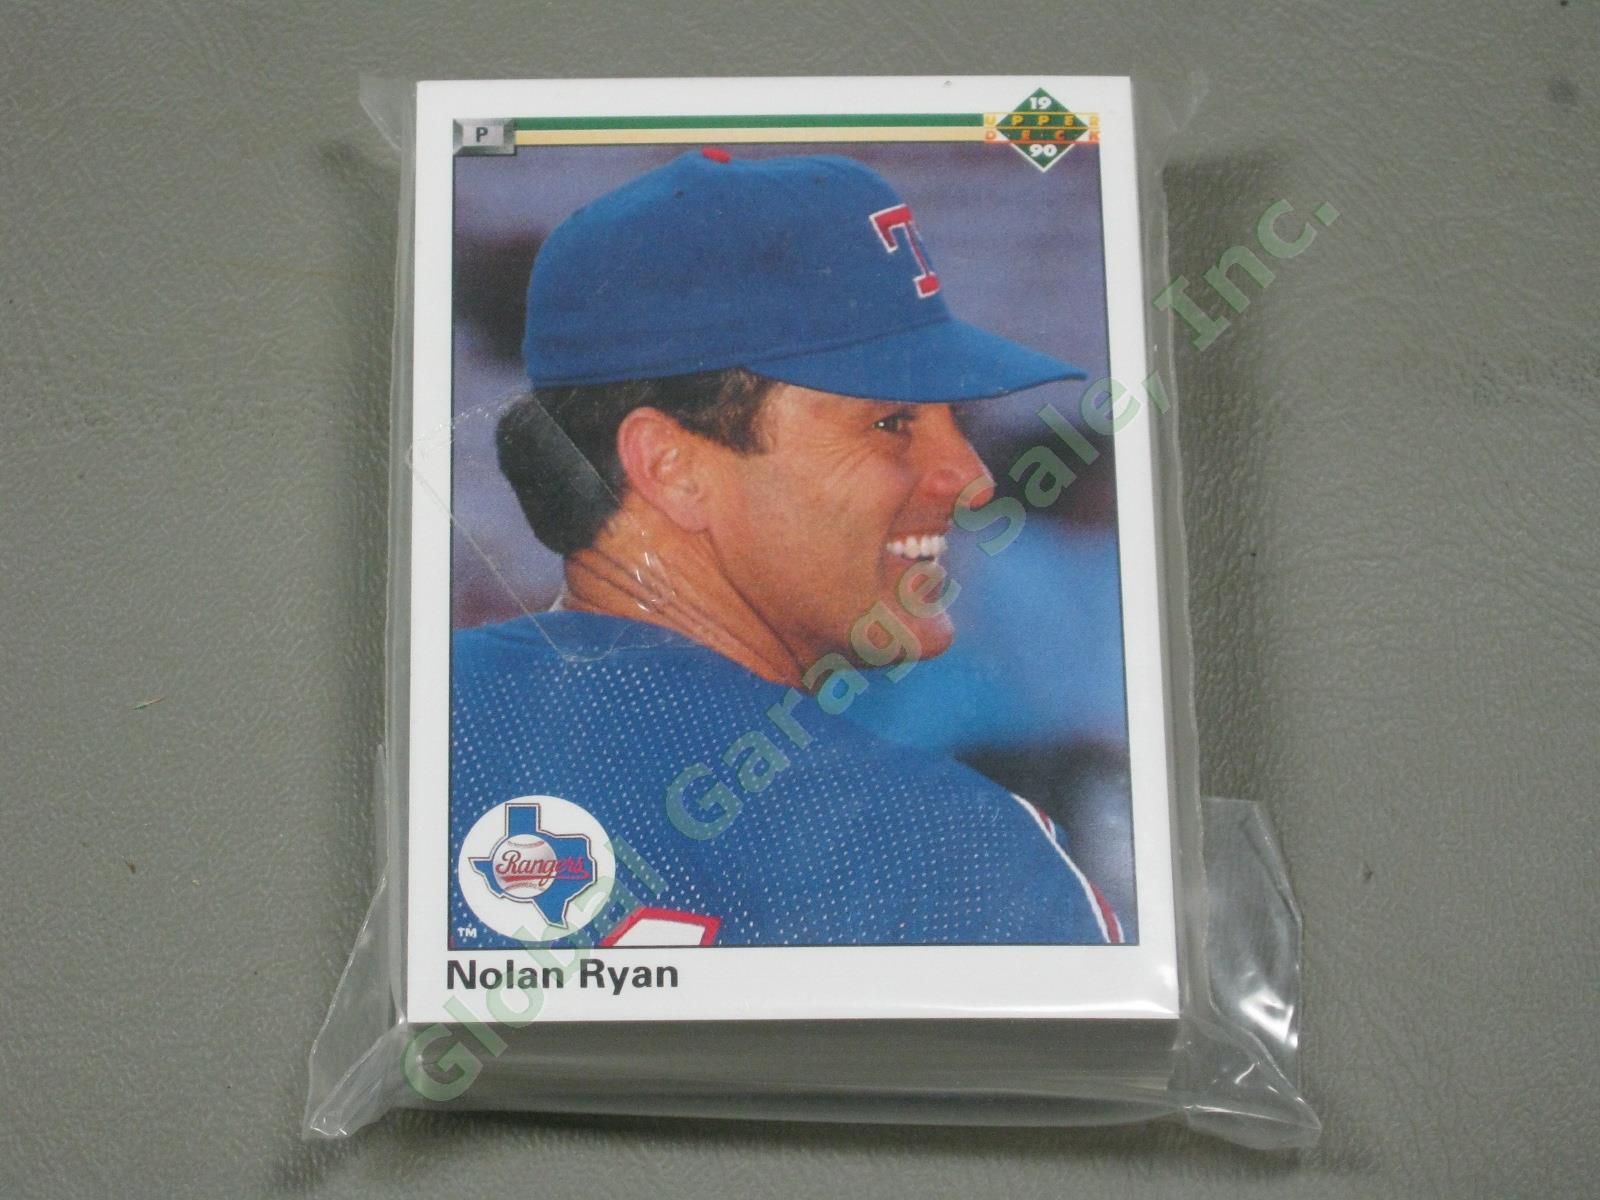 HUGE 3650+/- Vtg Nolan Ryan Baseball Card Lot 1984-1991 Topps Upper Deck #1 ++NR 10